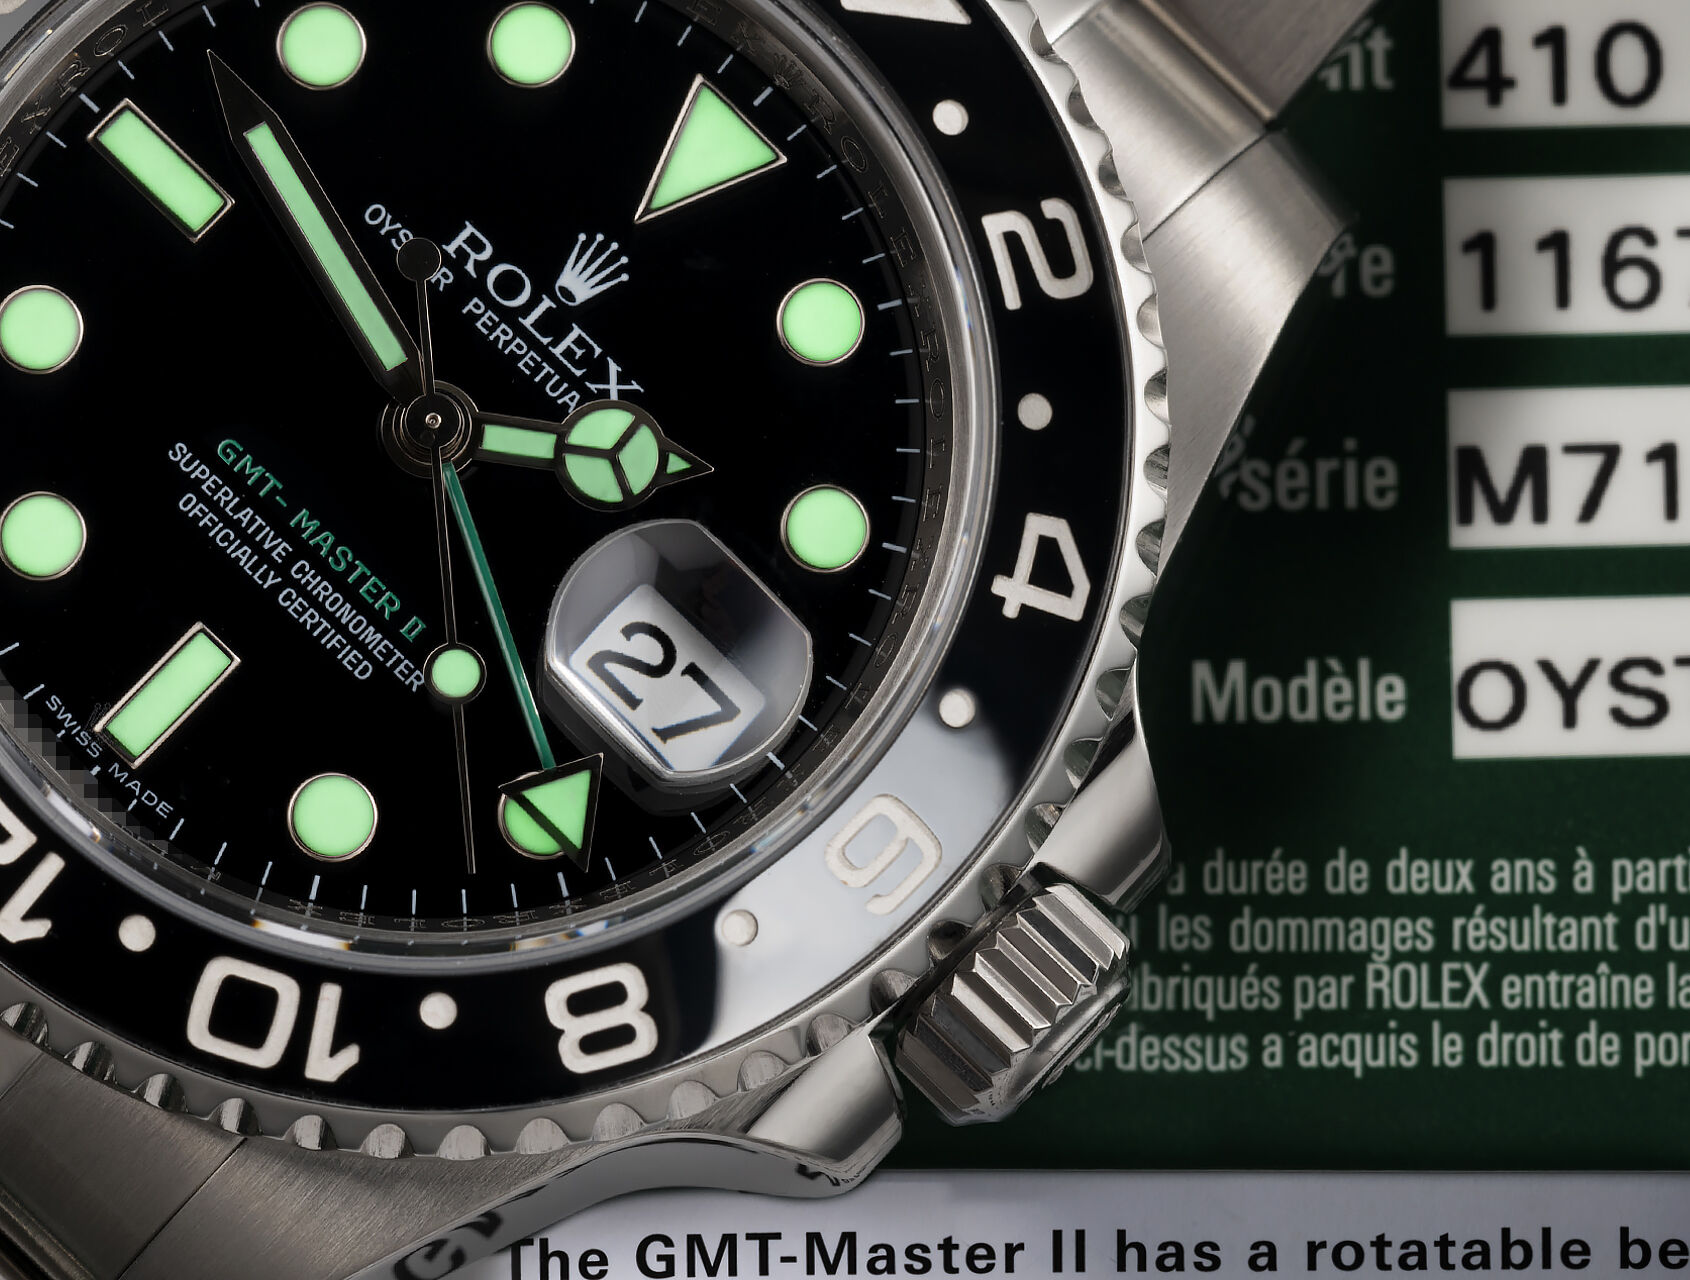 ref 116710LN | 116710LN - Box & Certificate | Rolex GMT-Master II